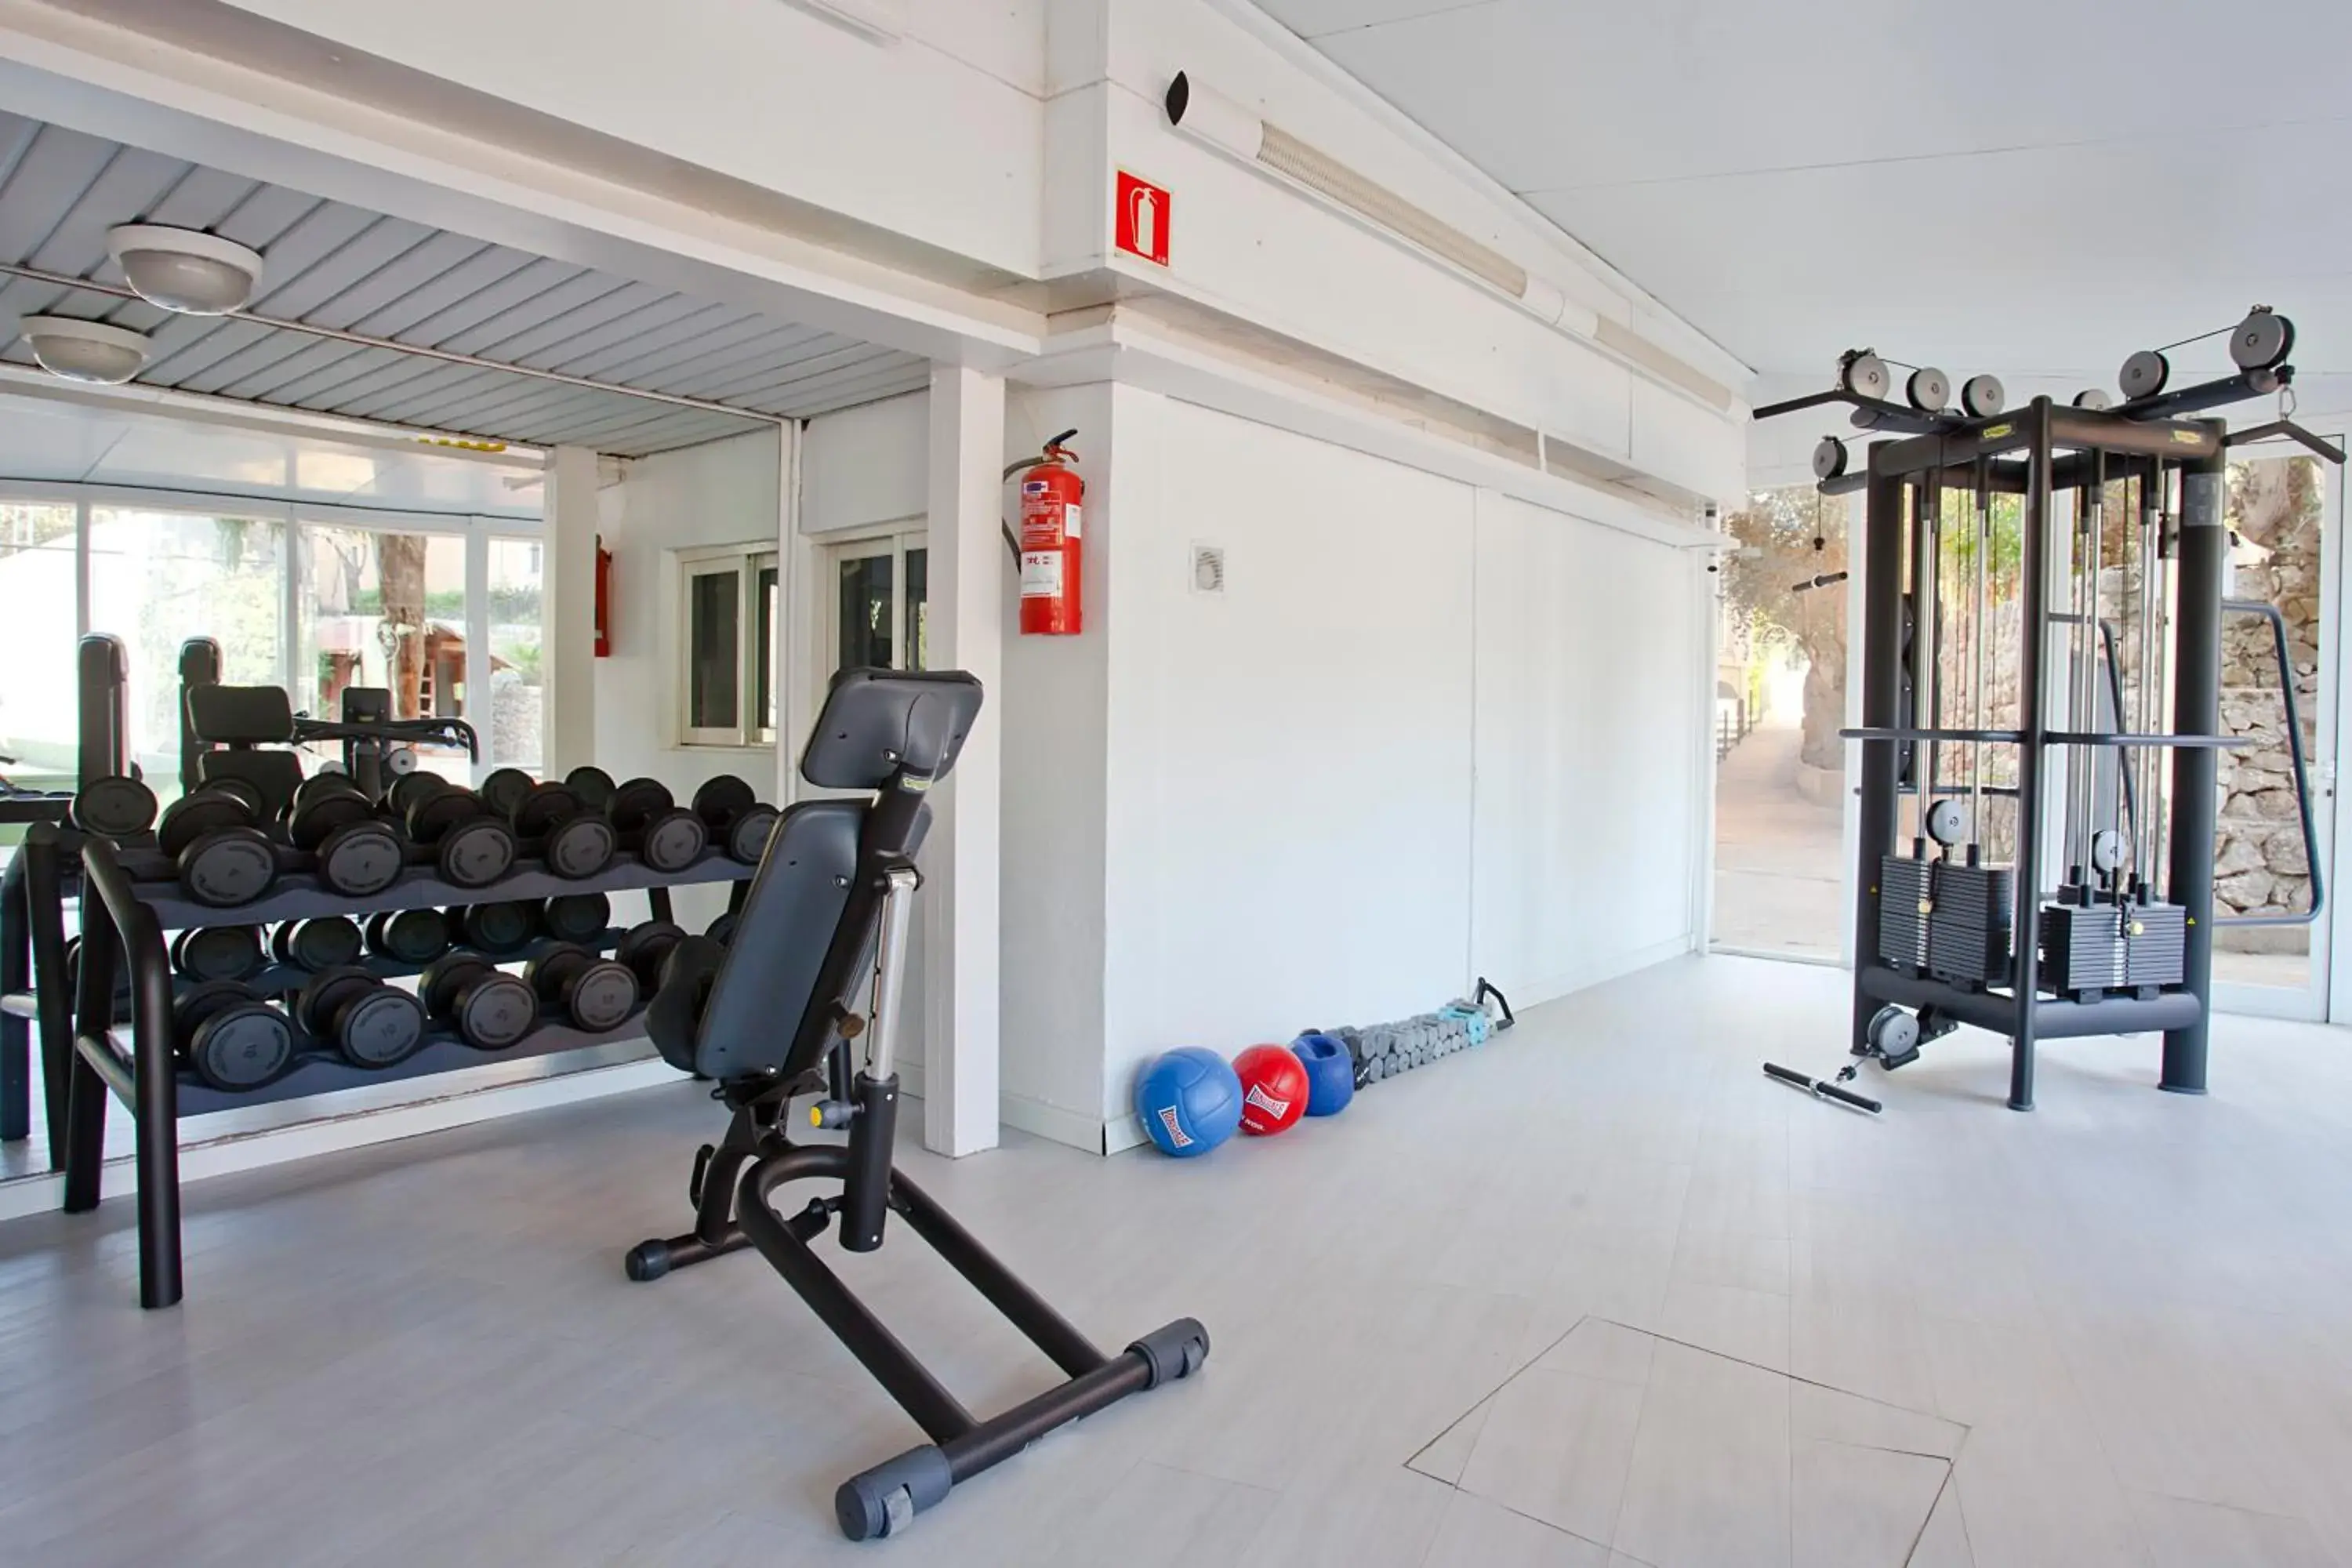 Fitness centre/facilities, Fitness Center/Facilities in Hotel La Pergola Mallorca